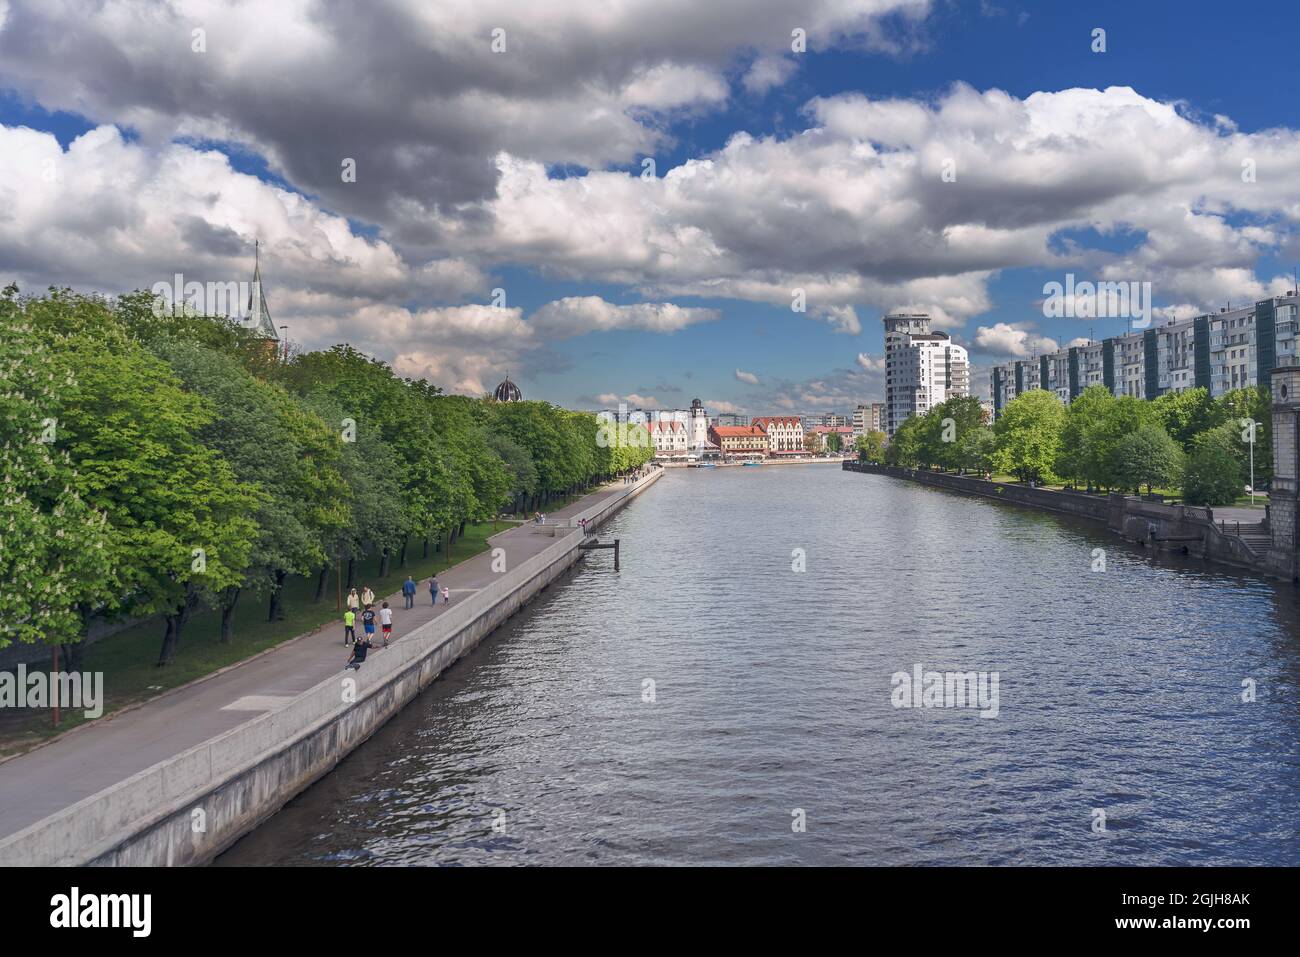 Kaliningrad, Russie - 14 mai 2021 : vue sur l'île de Kants et le village de pêcheurs depuis le pont au-dessus de la rivière Pregolya Banque D'Images